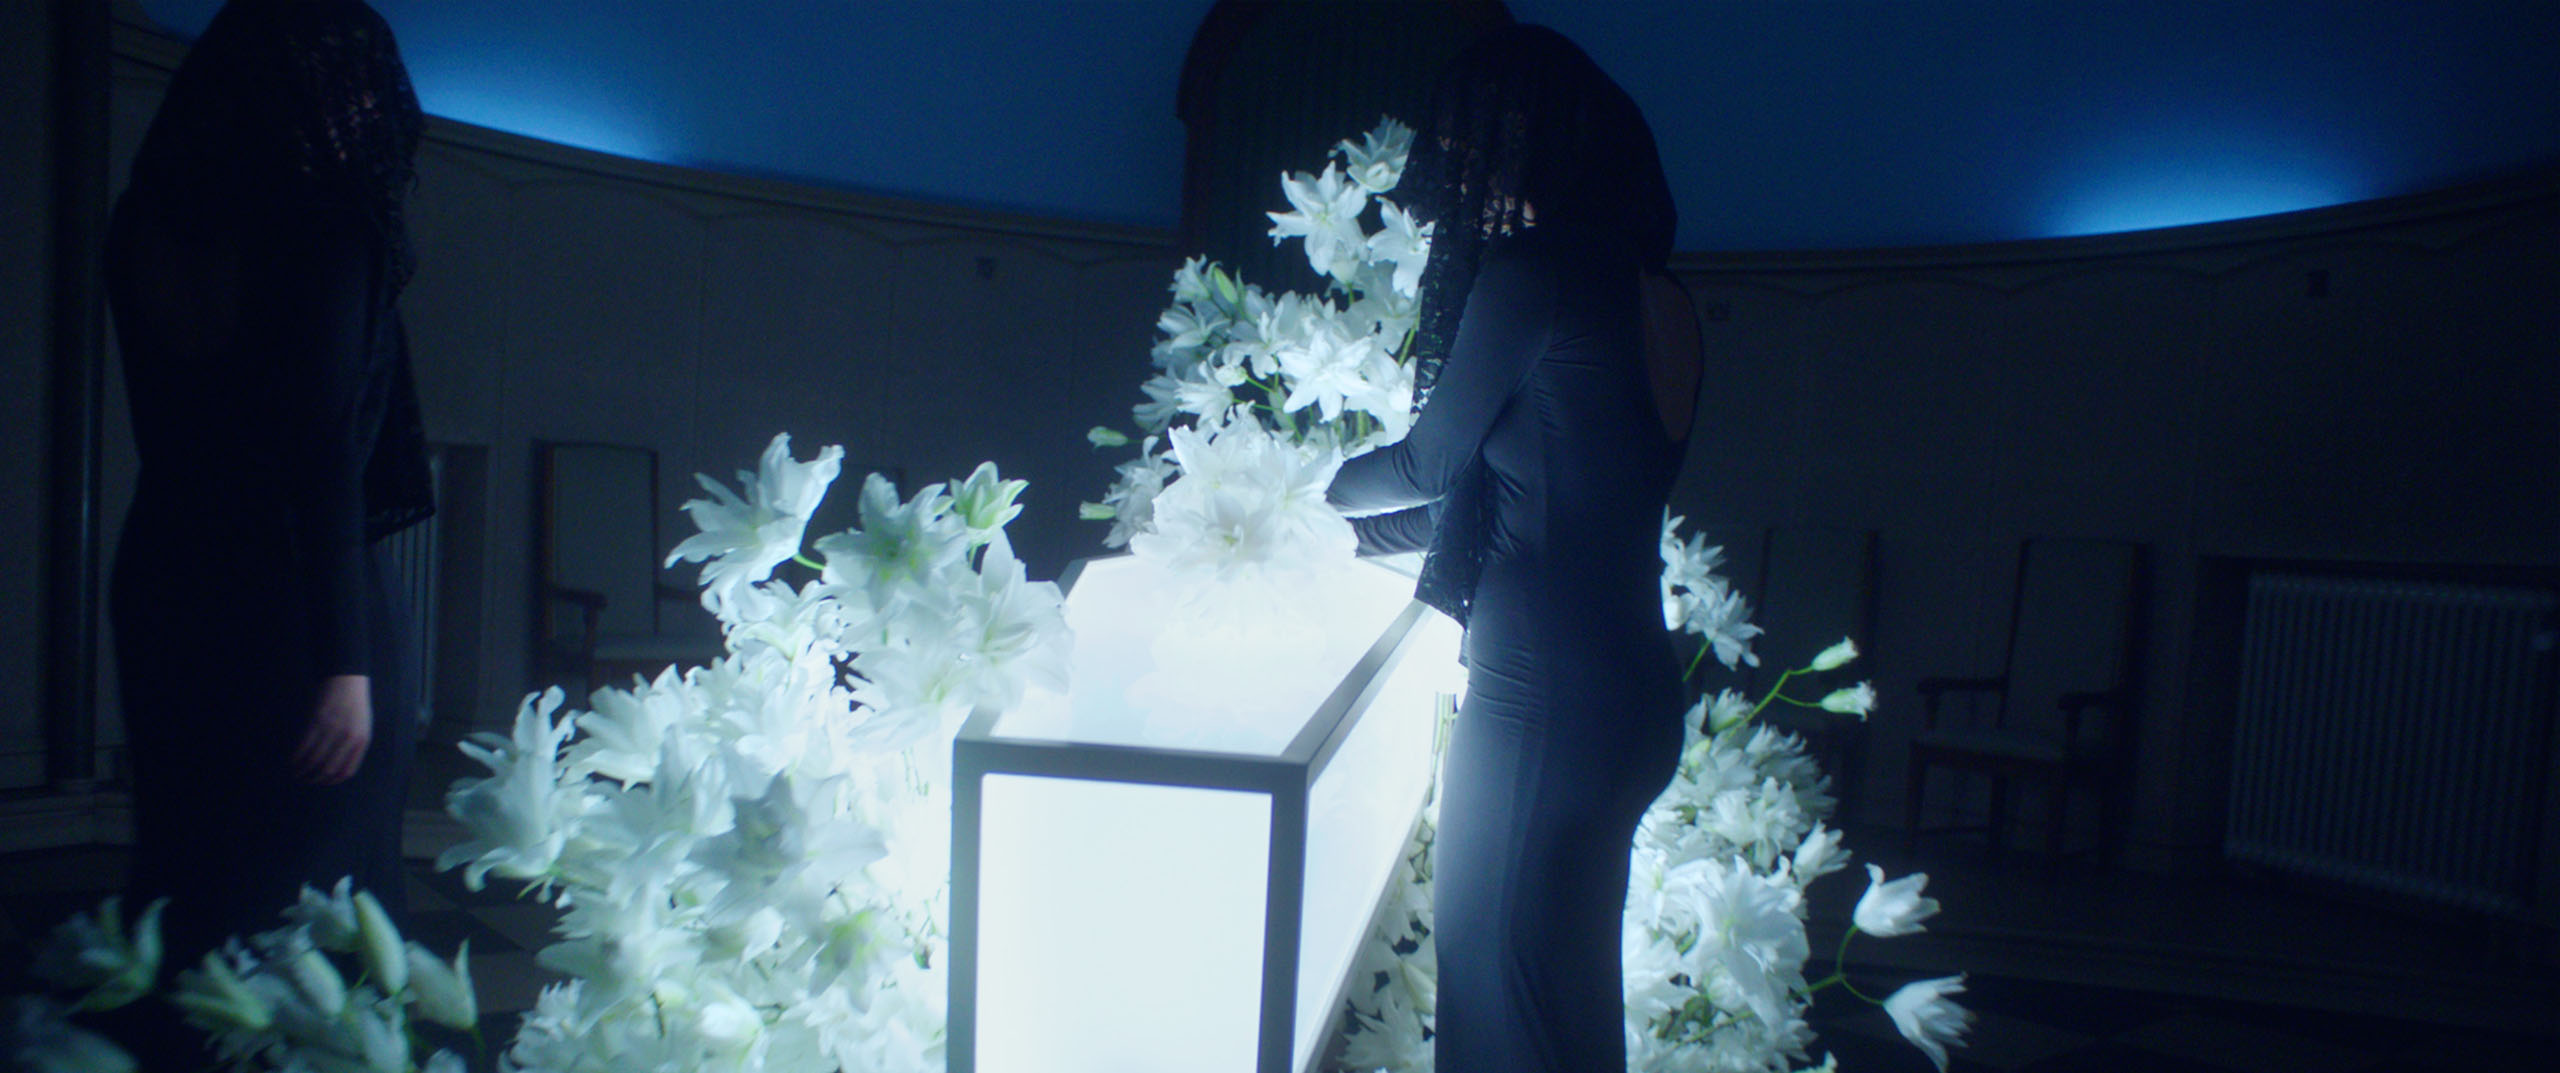 Holex flower funeral